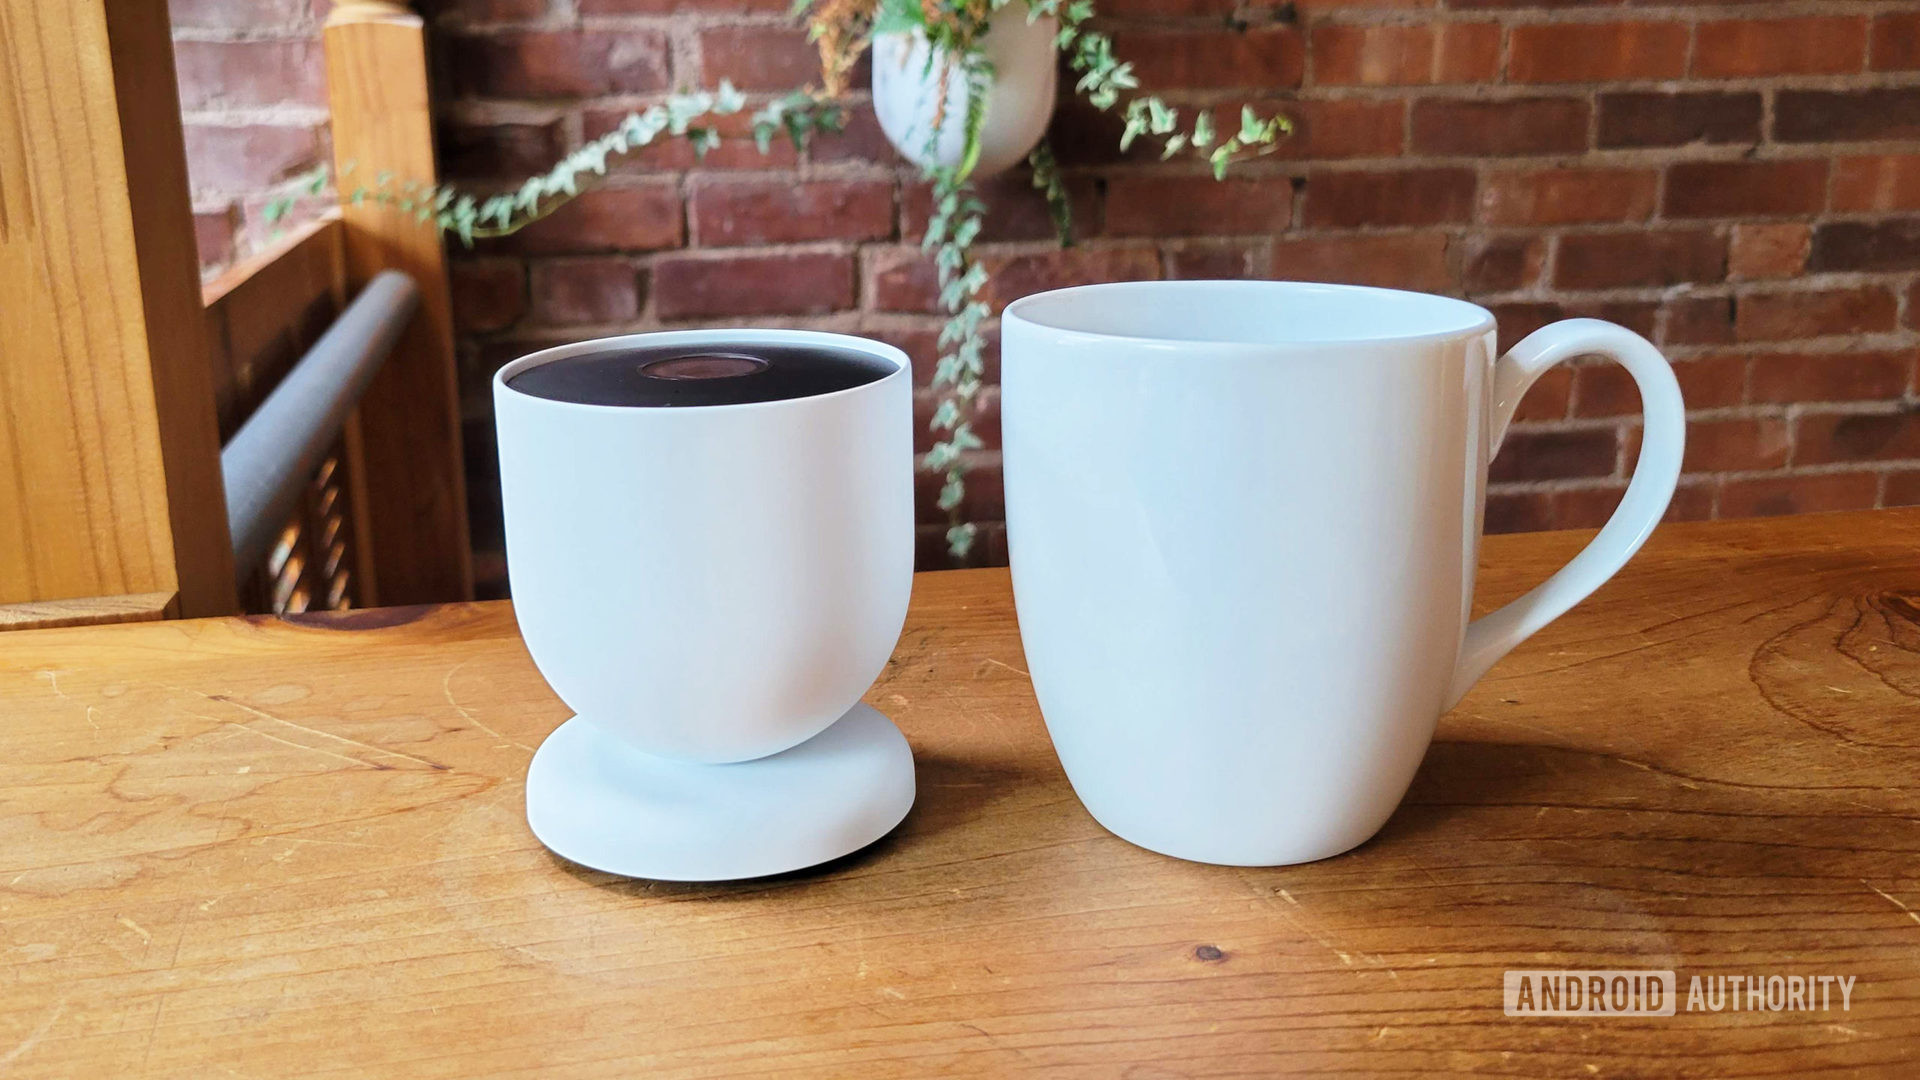 Google Nest Cam Review 2021 Next To Coffee Mug